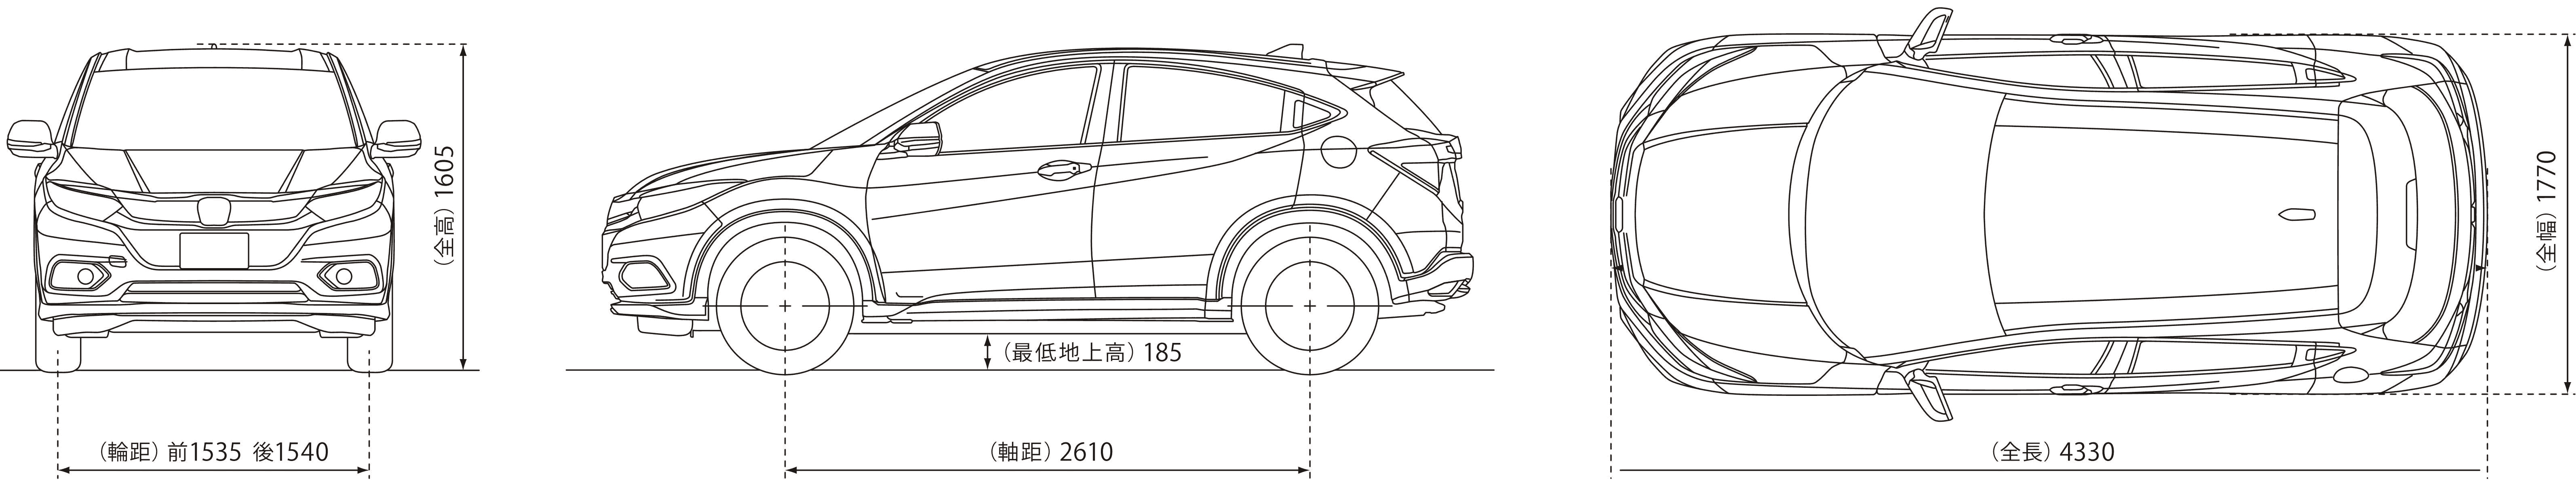 Honda Vezel blueprint